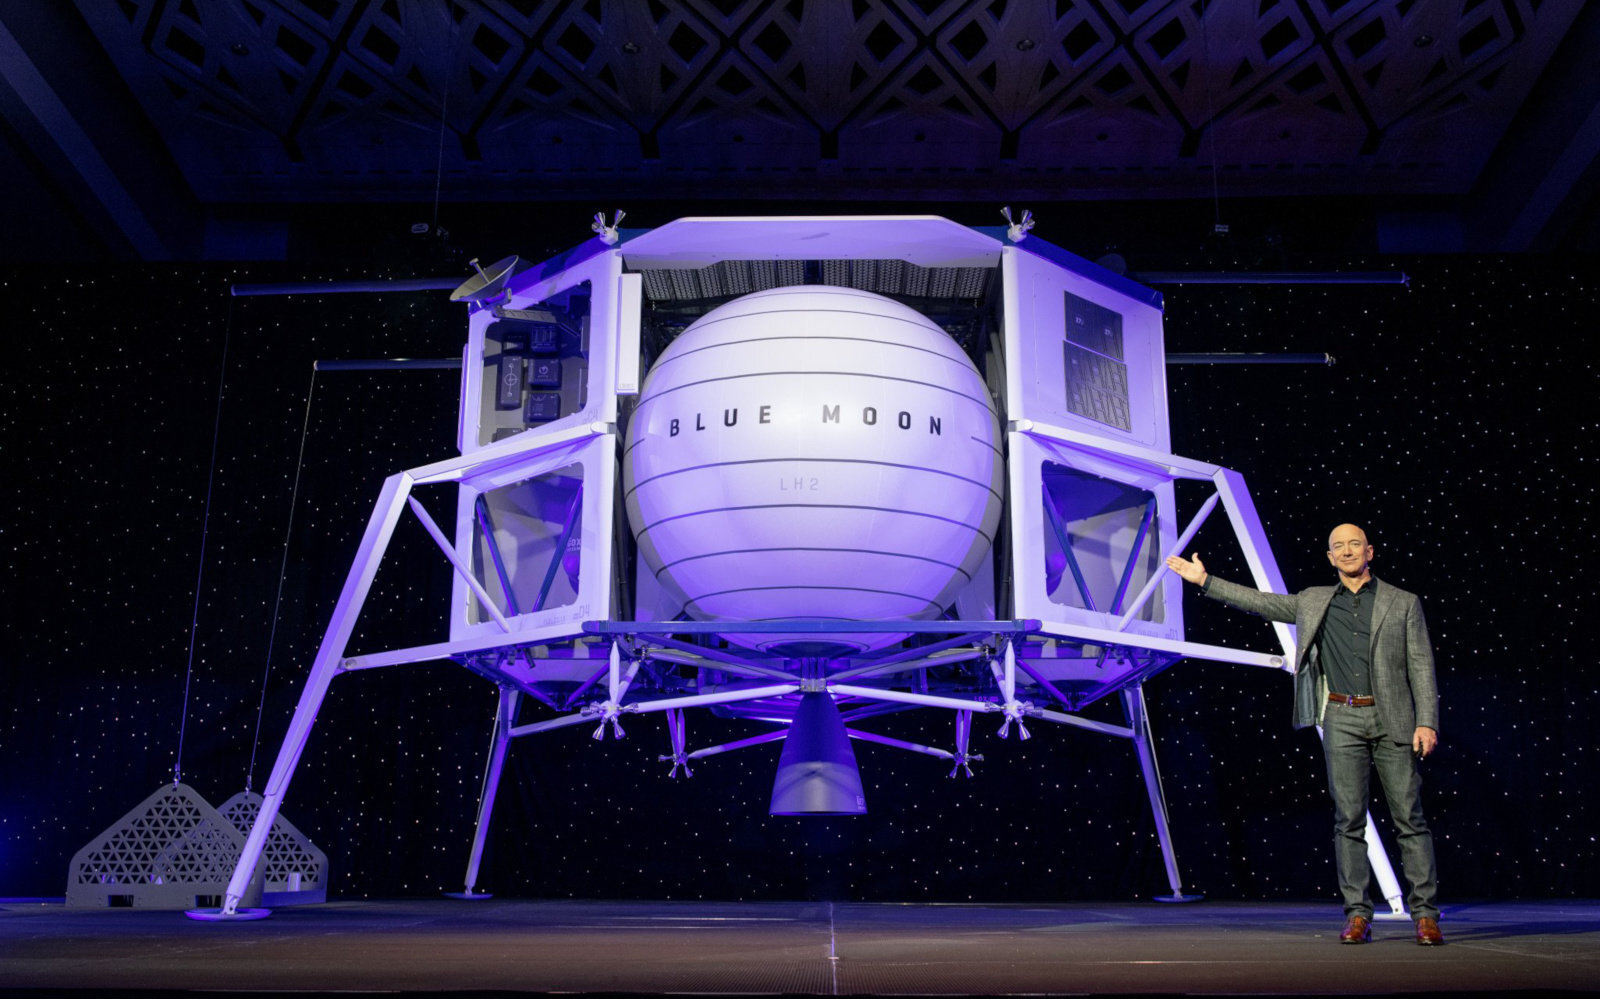 Η Blue Origin προσφέρει $2 δις στην NASA σε μία τελευταία απόπειρα να κερδίσει το συμβόλαιο για το ταξίδι στη Σελήνη